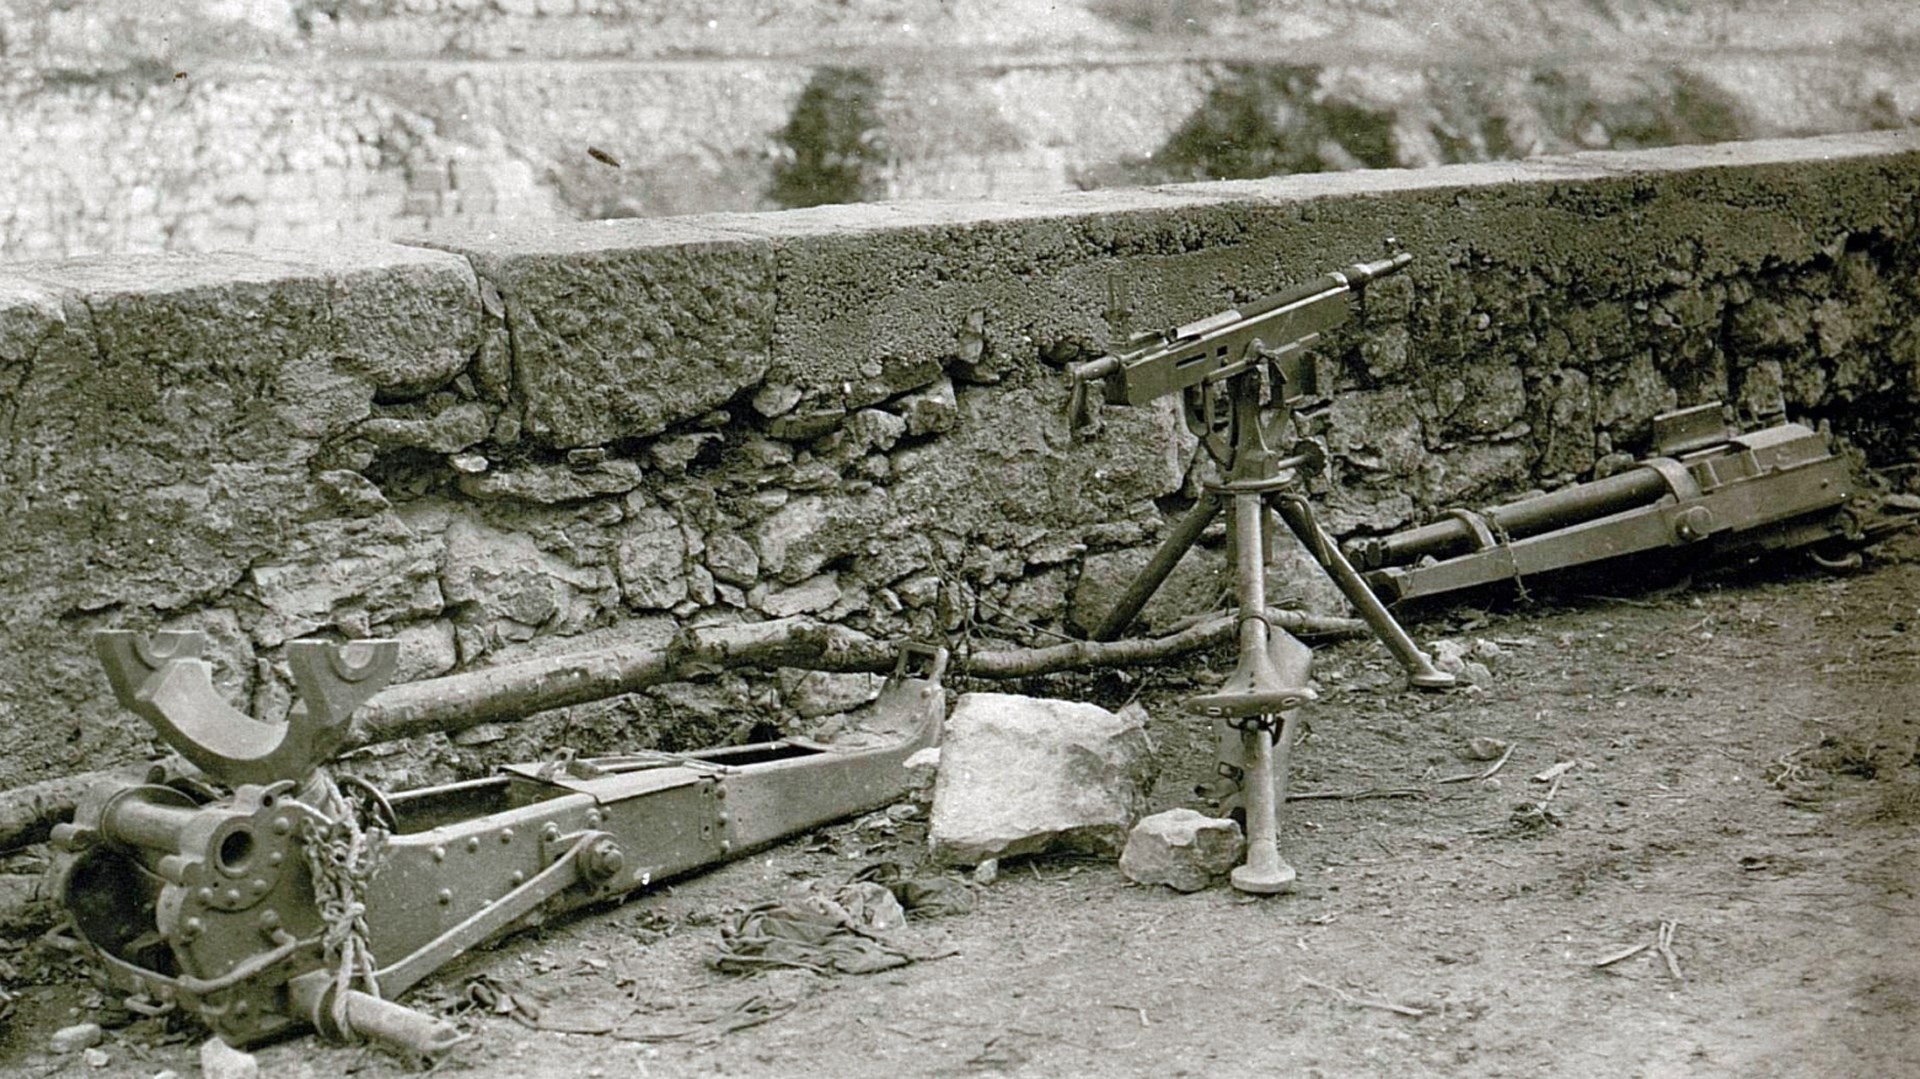 3)	Italian M1895 machine gun captured by the Austrians during World War I.